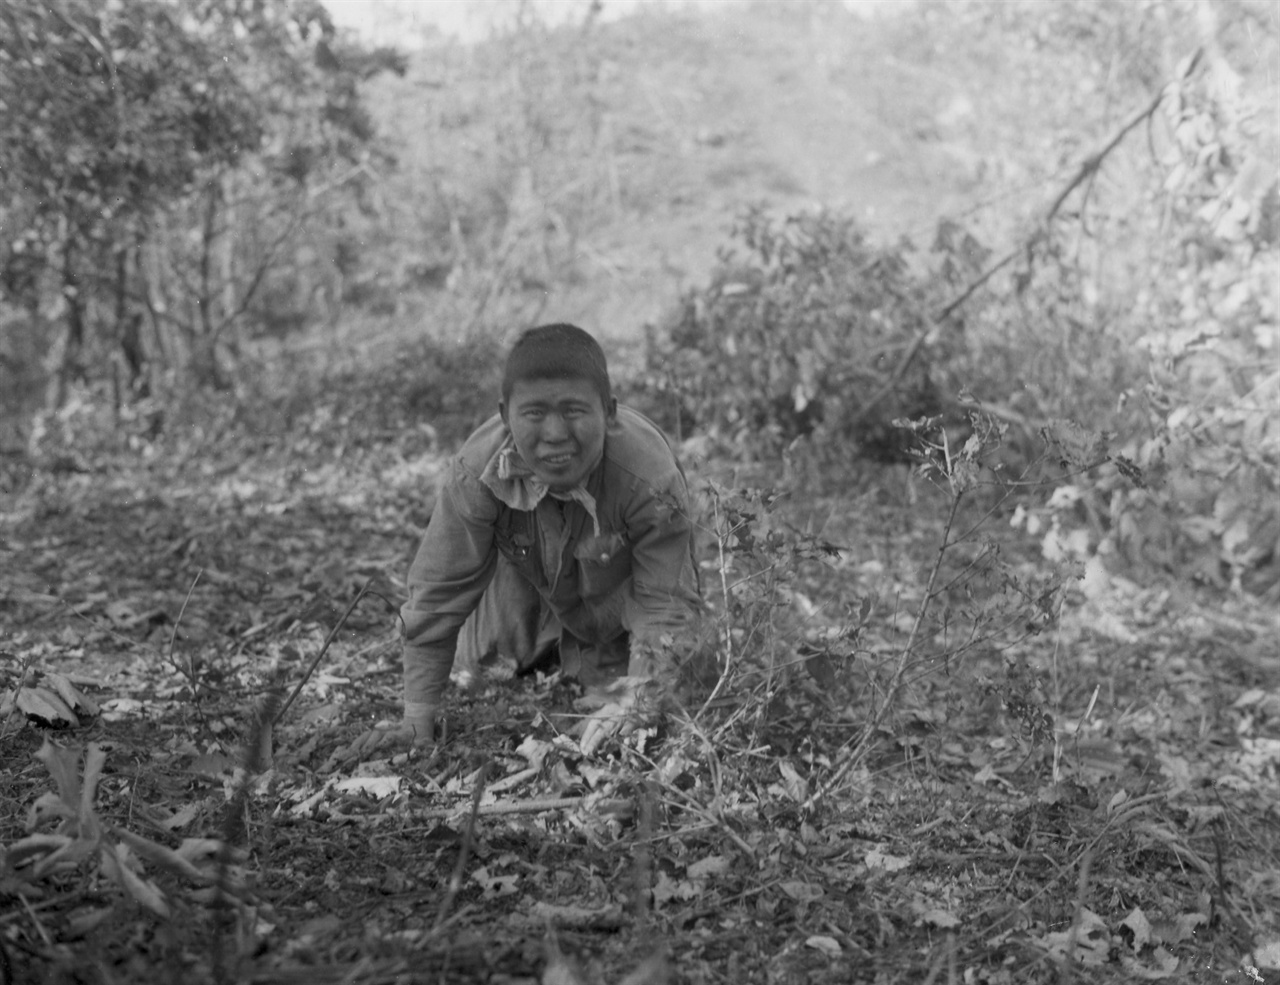 1951. 9. 20. 수풀에 숨어 있던 한 인민군 병사가 총구 앞에서 짐승처럼 기어 나오면서 투항하고 있다.